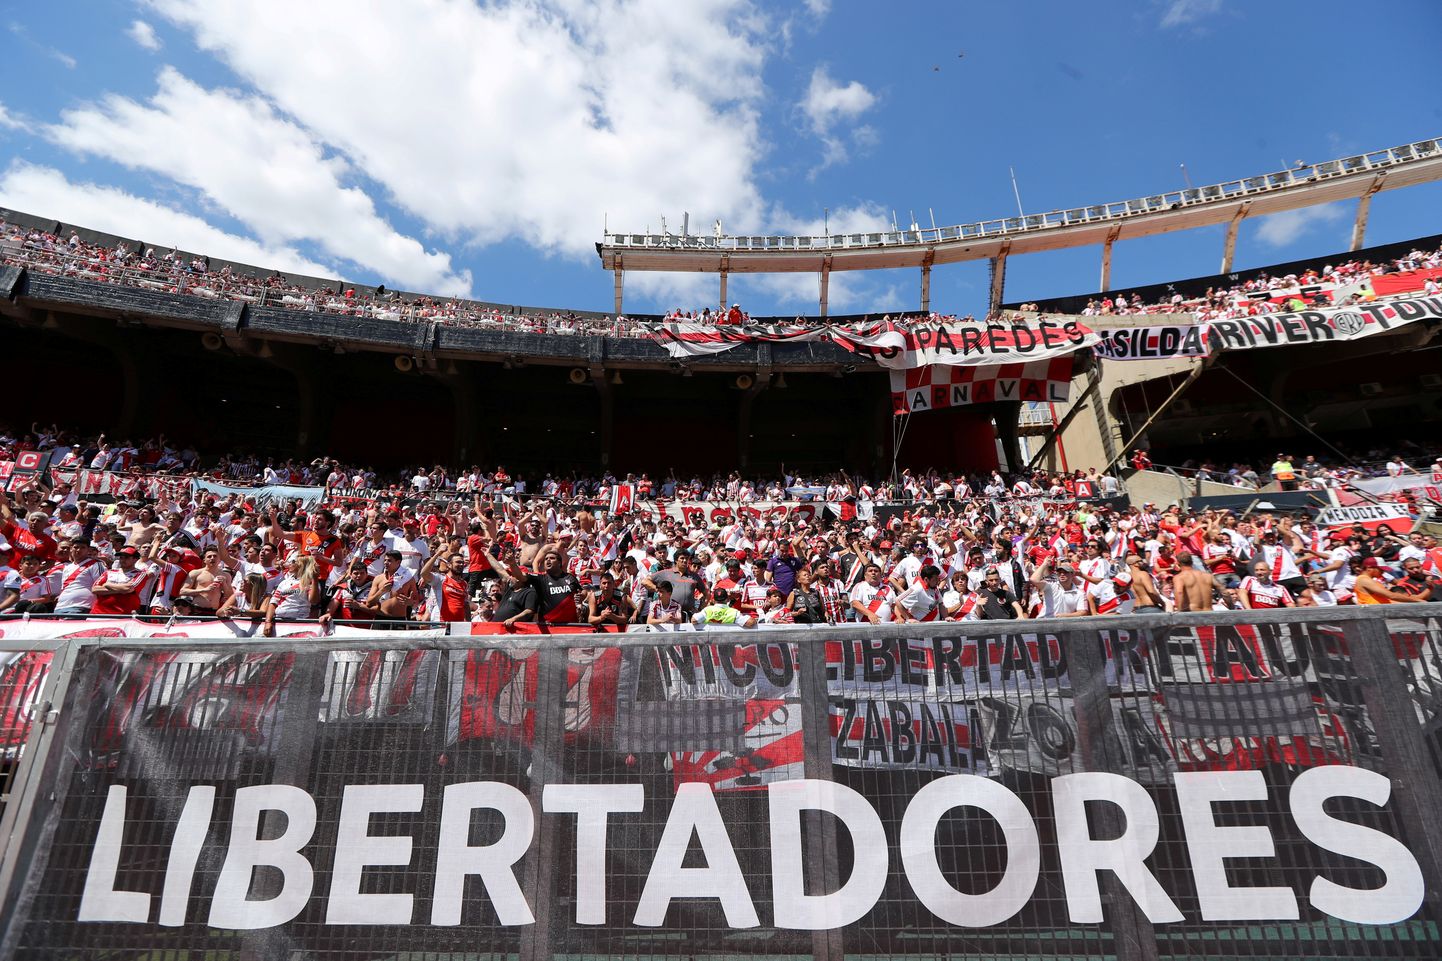 Copa Libertadoresi teine finaalmäng toimub nüüd ilmselt Madridis.